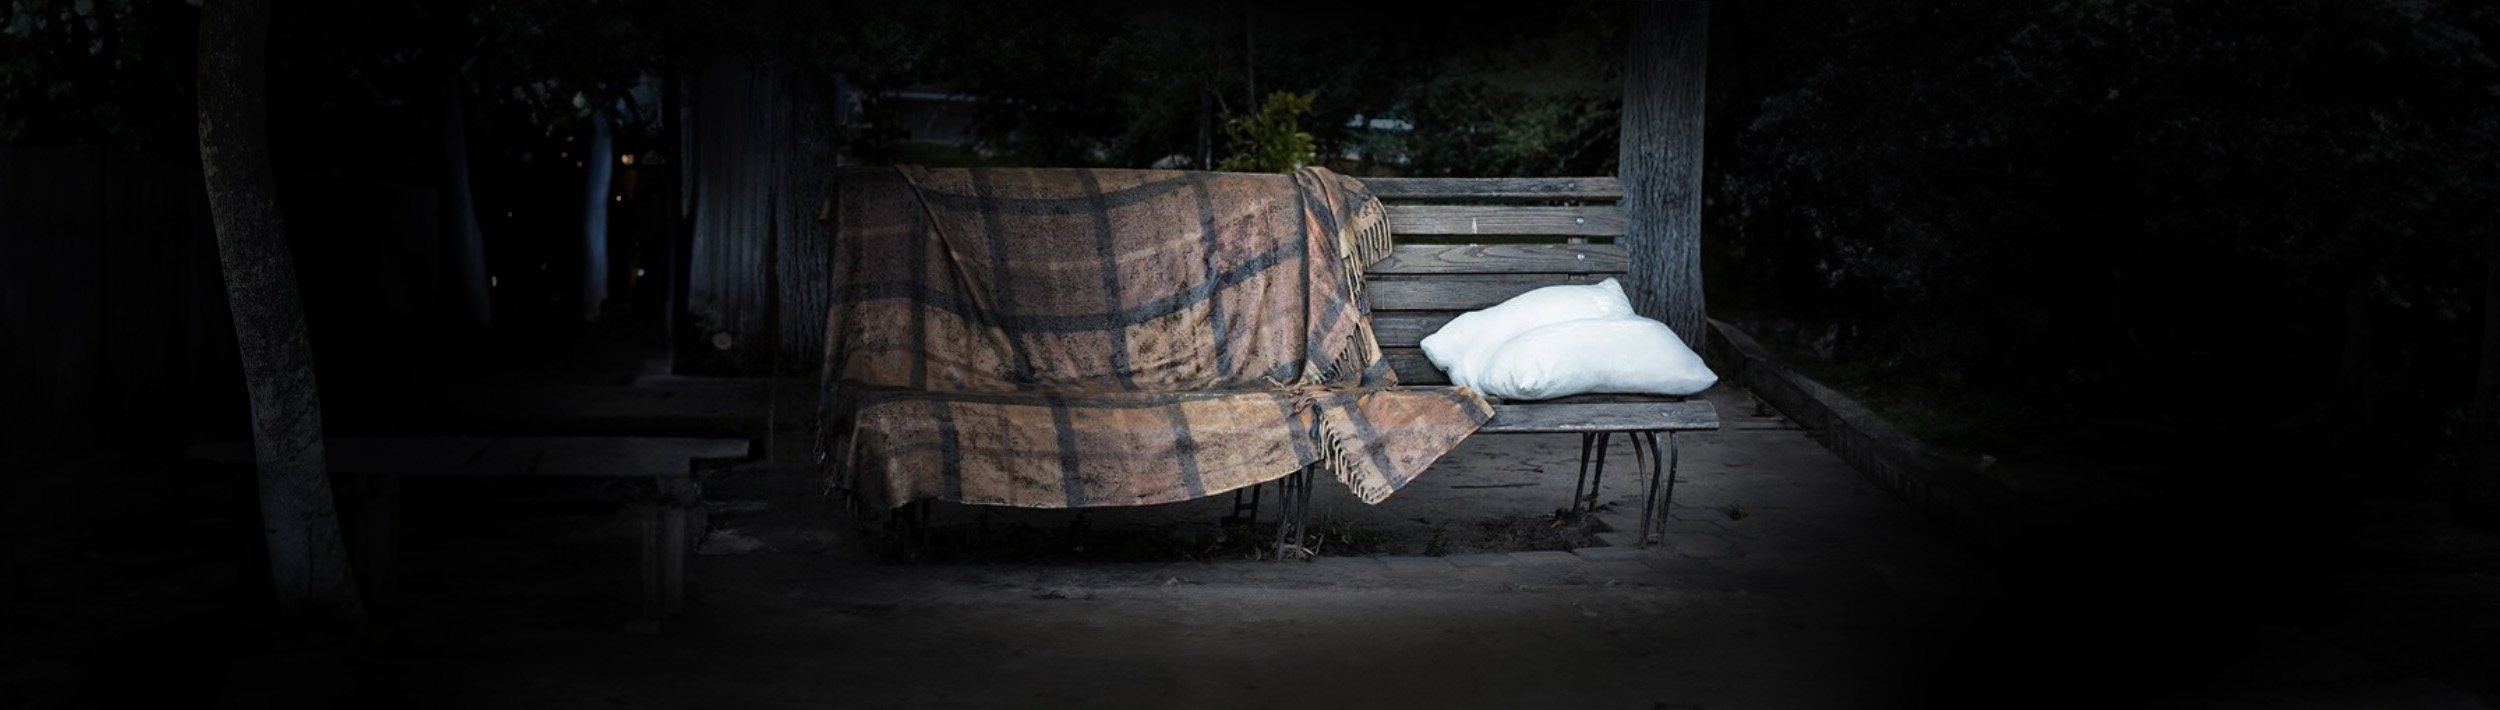 Kissen und Decke auf einer Bank im Dunkeln